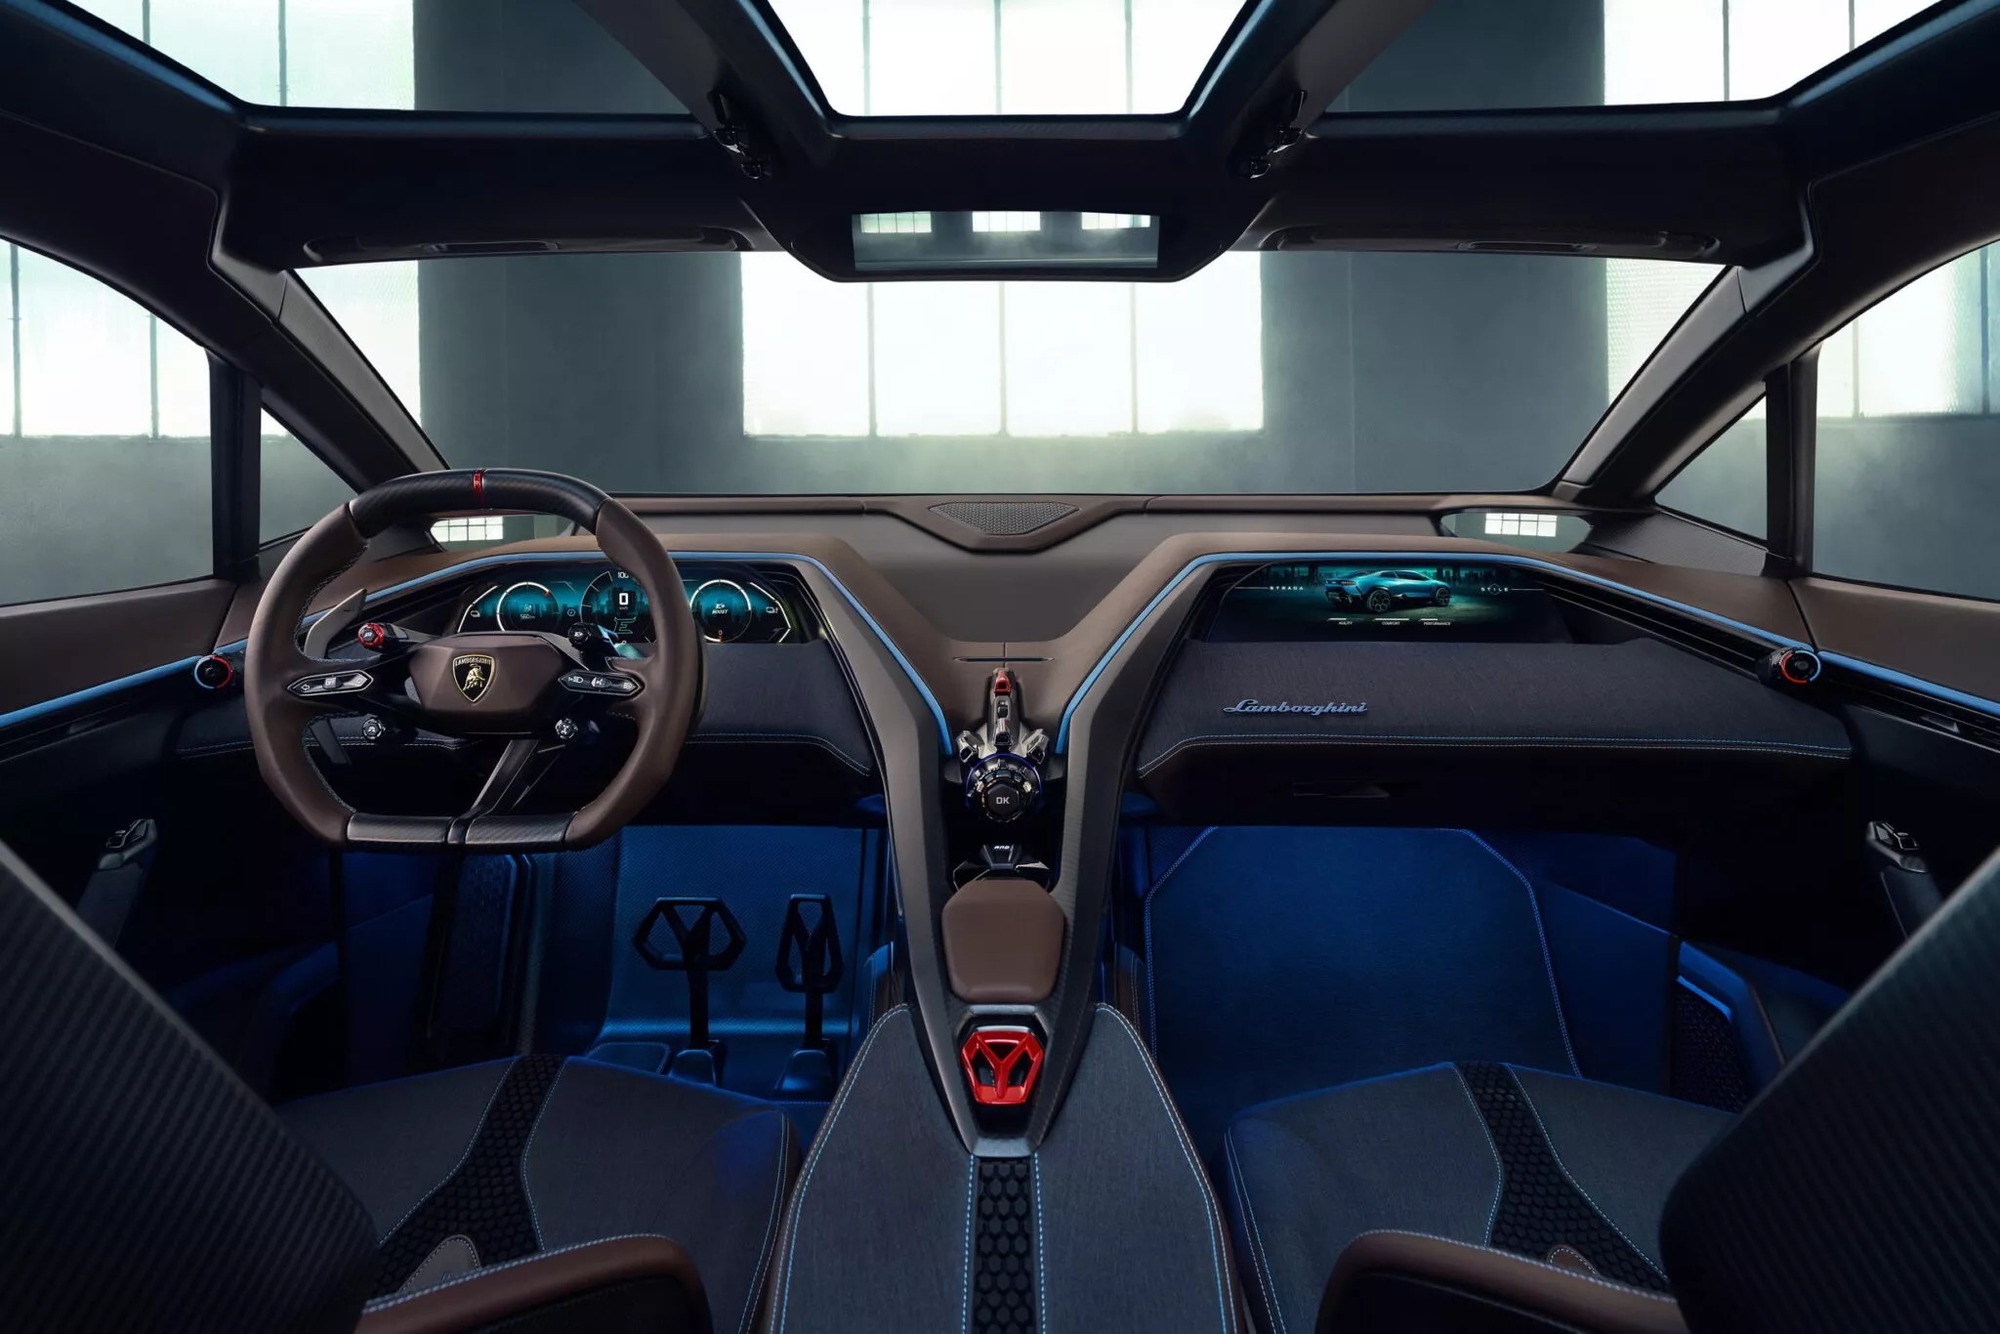 SUV thứ 2 của Lamborghini sau Urus chính thức chào sân, sẽ là xe điện đầu tiên của hãng - Ảnh 2.